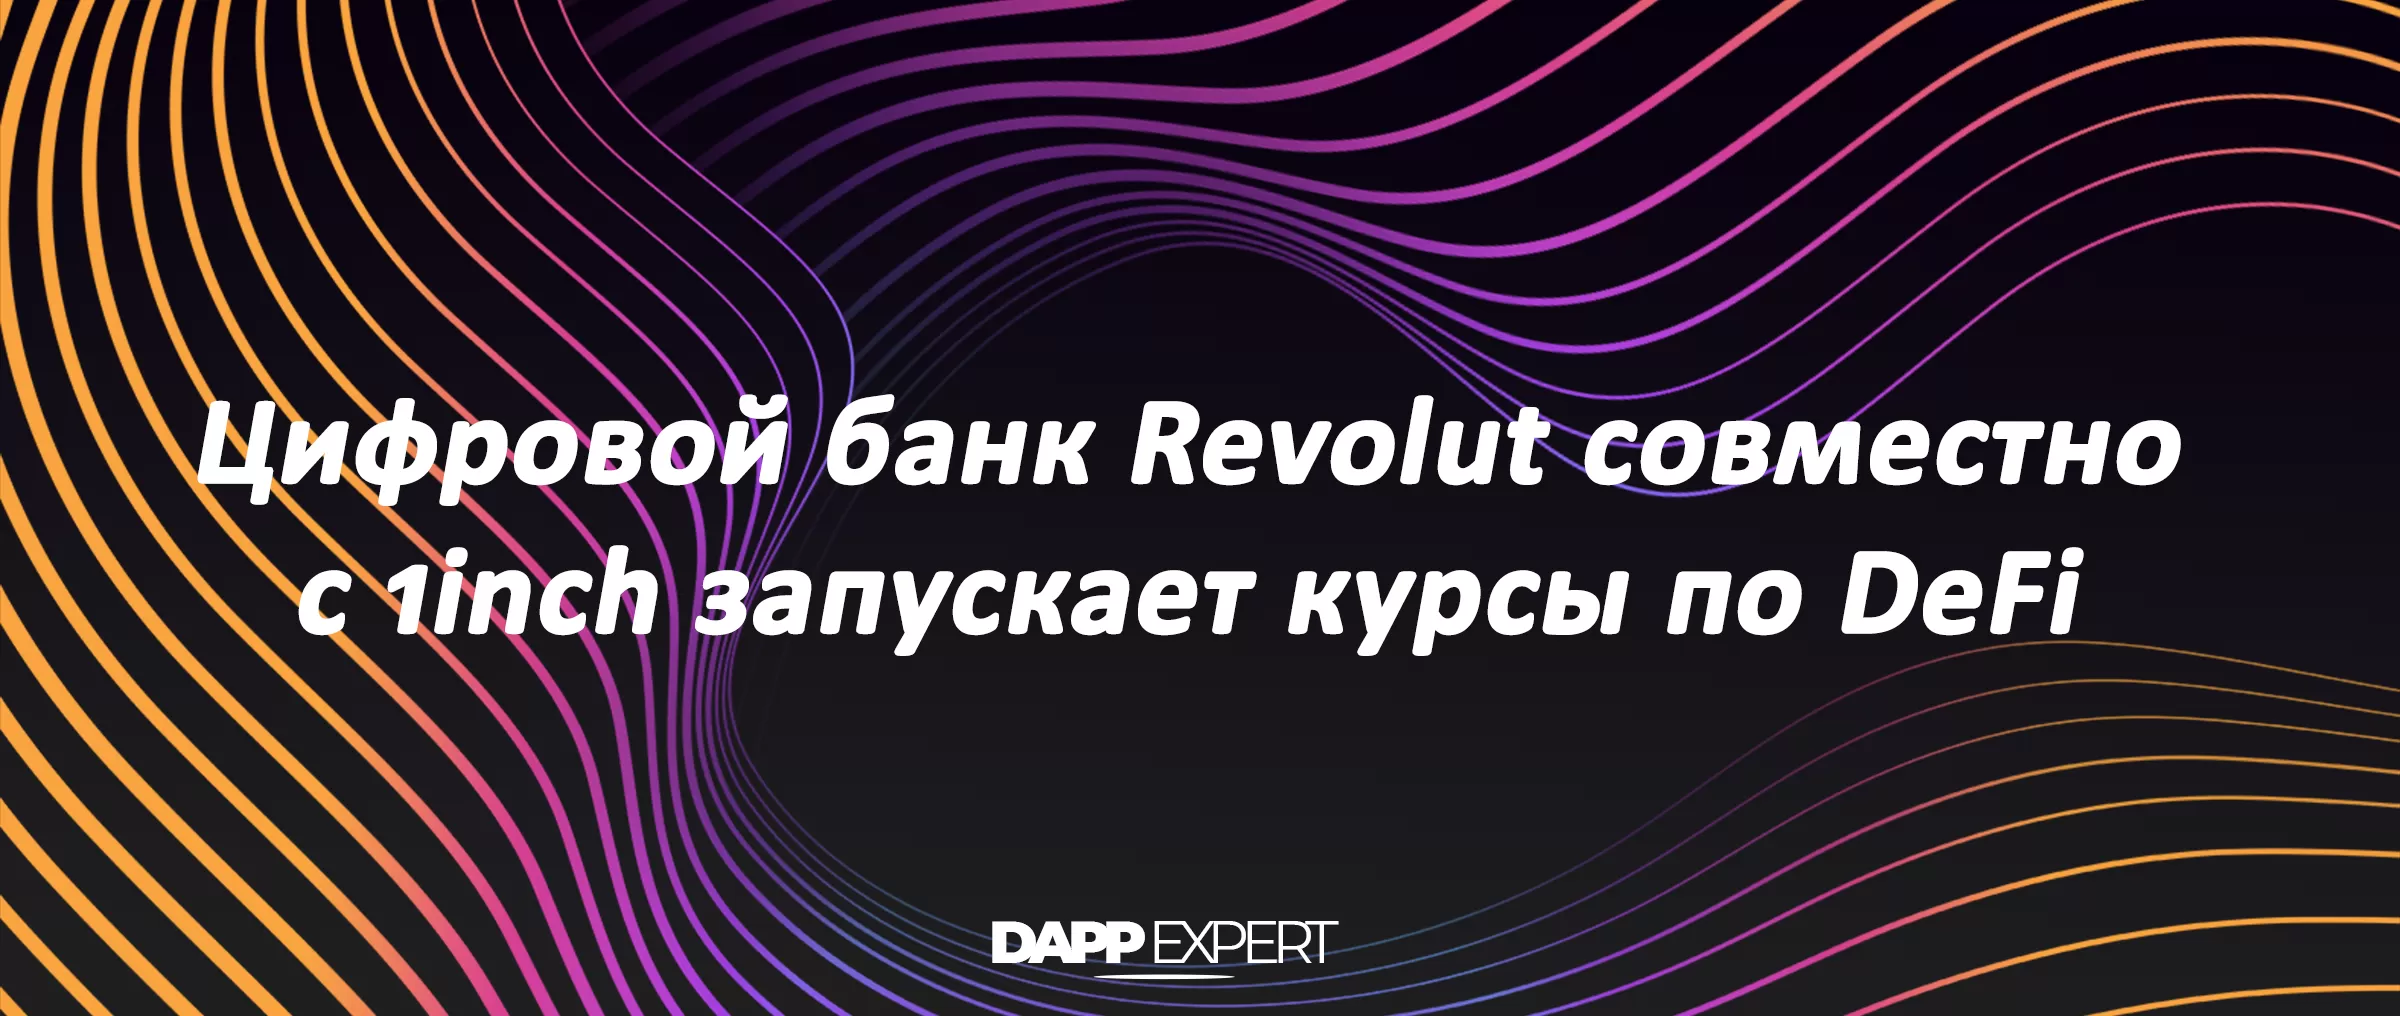 Цифровой банк Revolut совместно с 1inch запускает курсы по DeFi